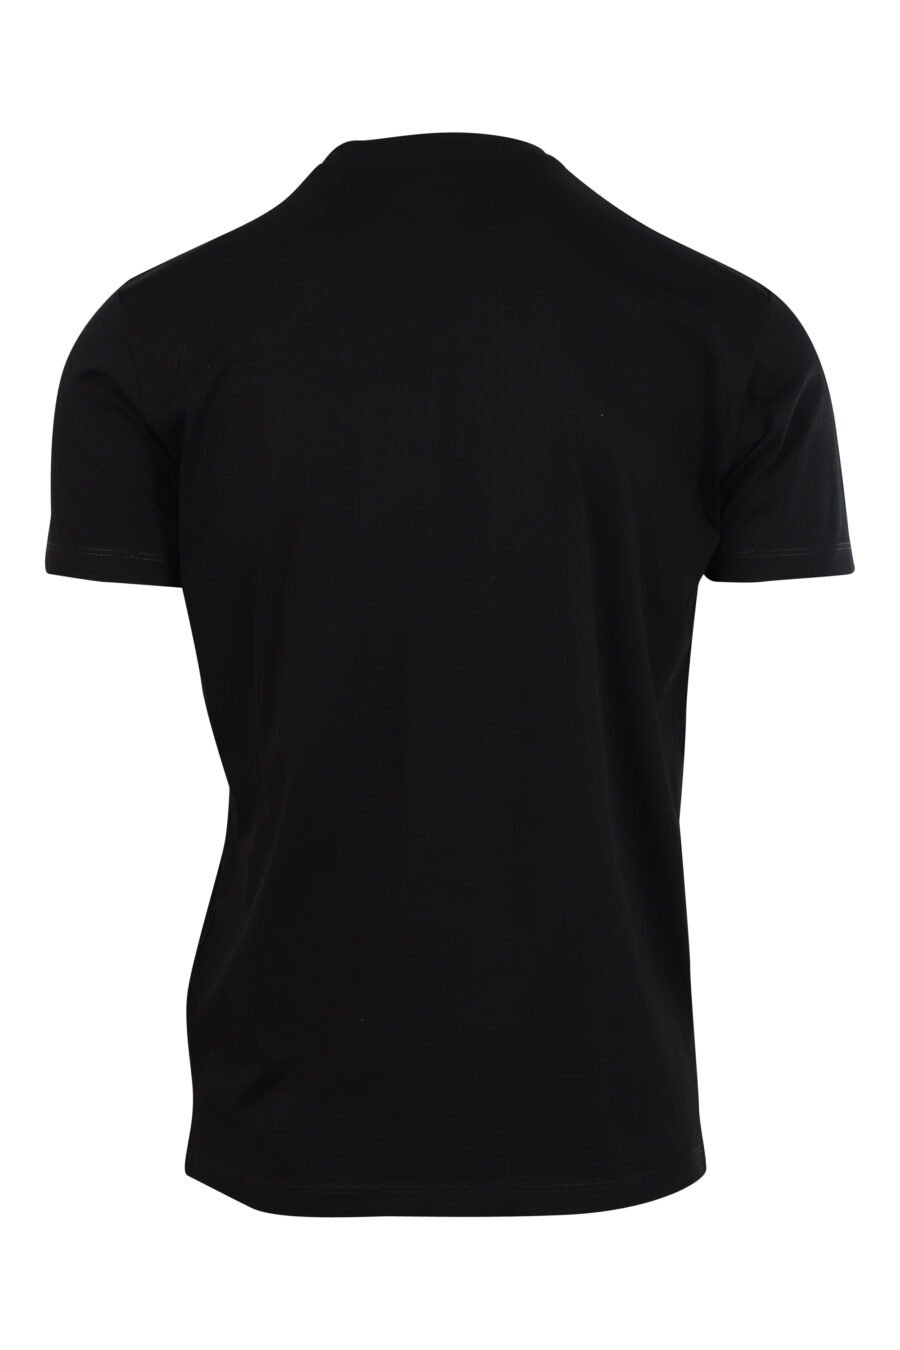 T-shirt noir avec maxilogo graphic leaf outline - 8052134941010 2